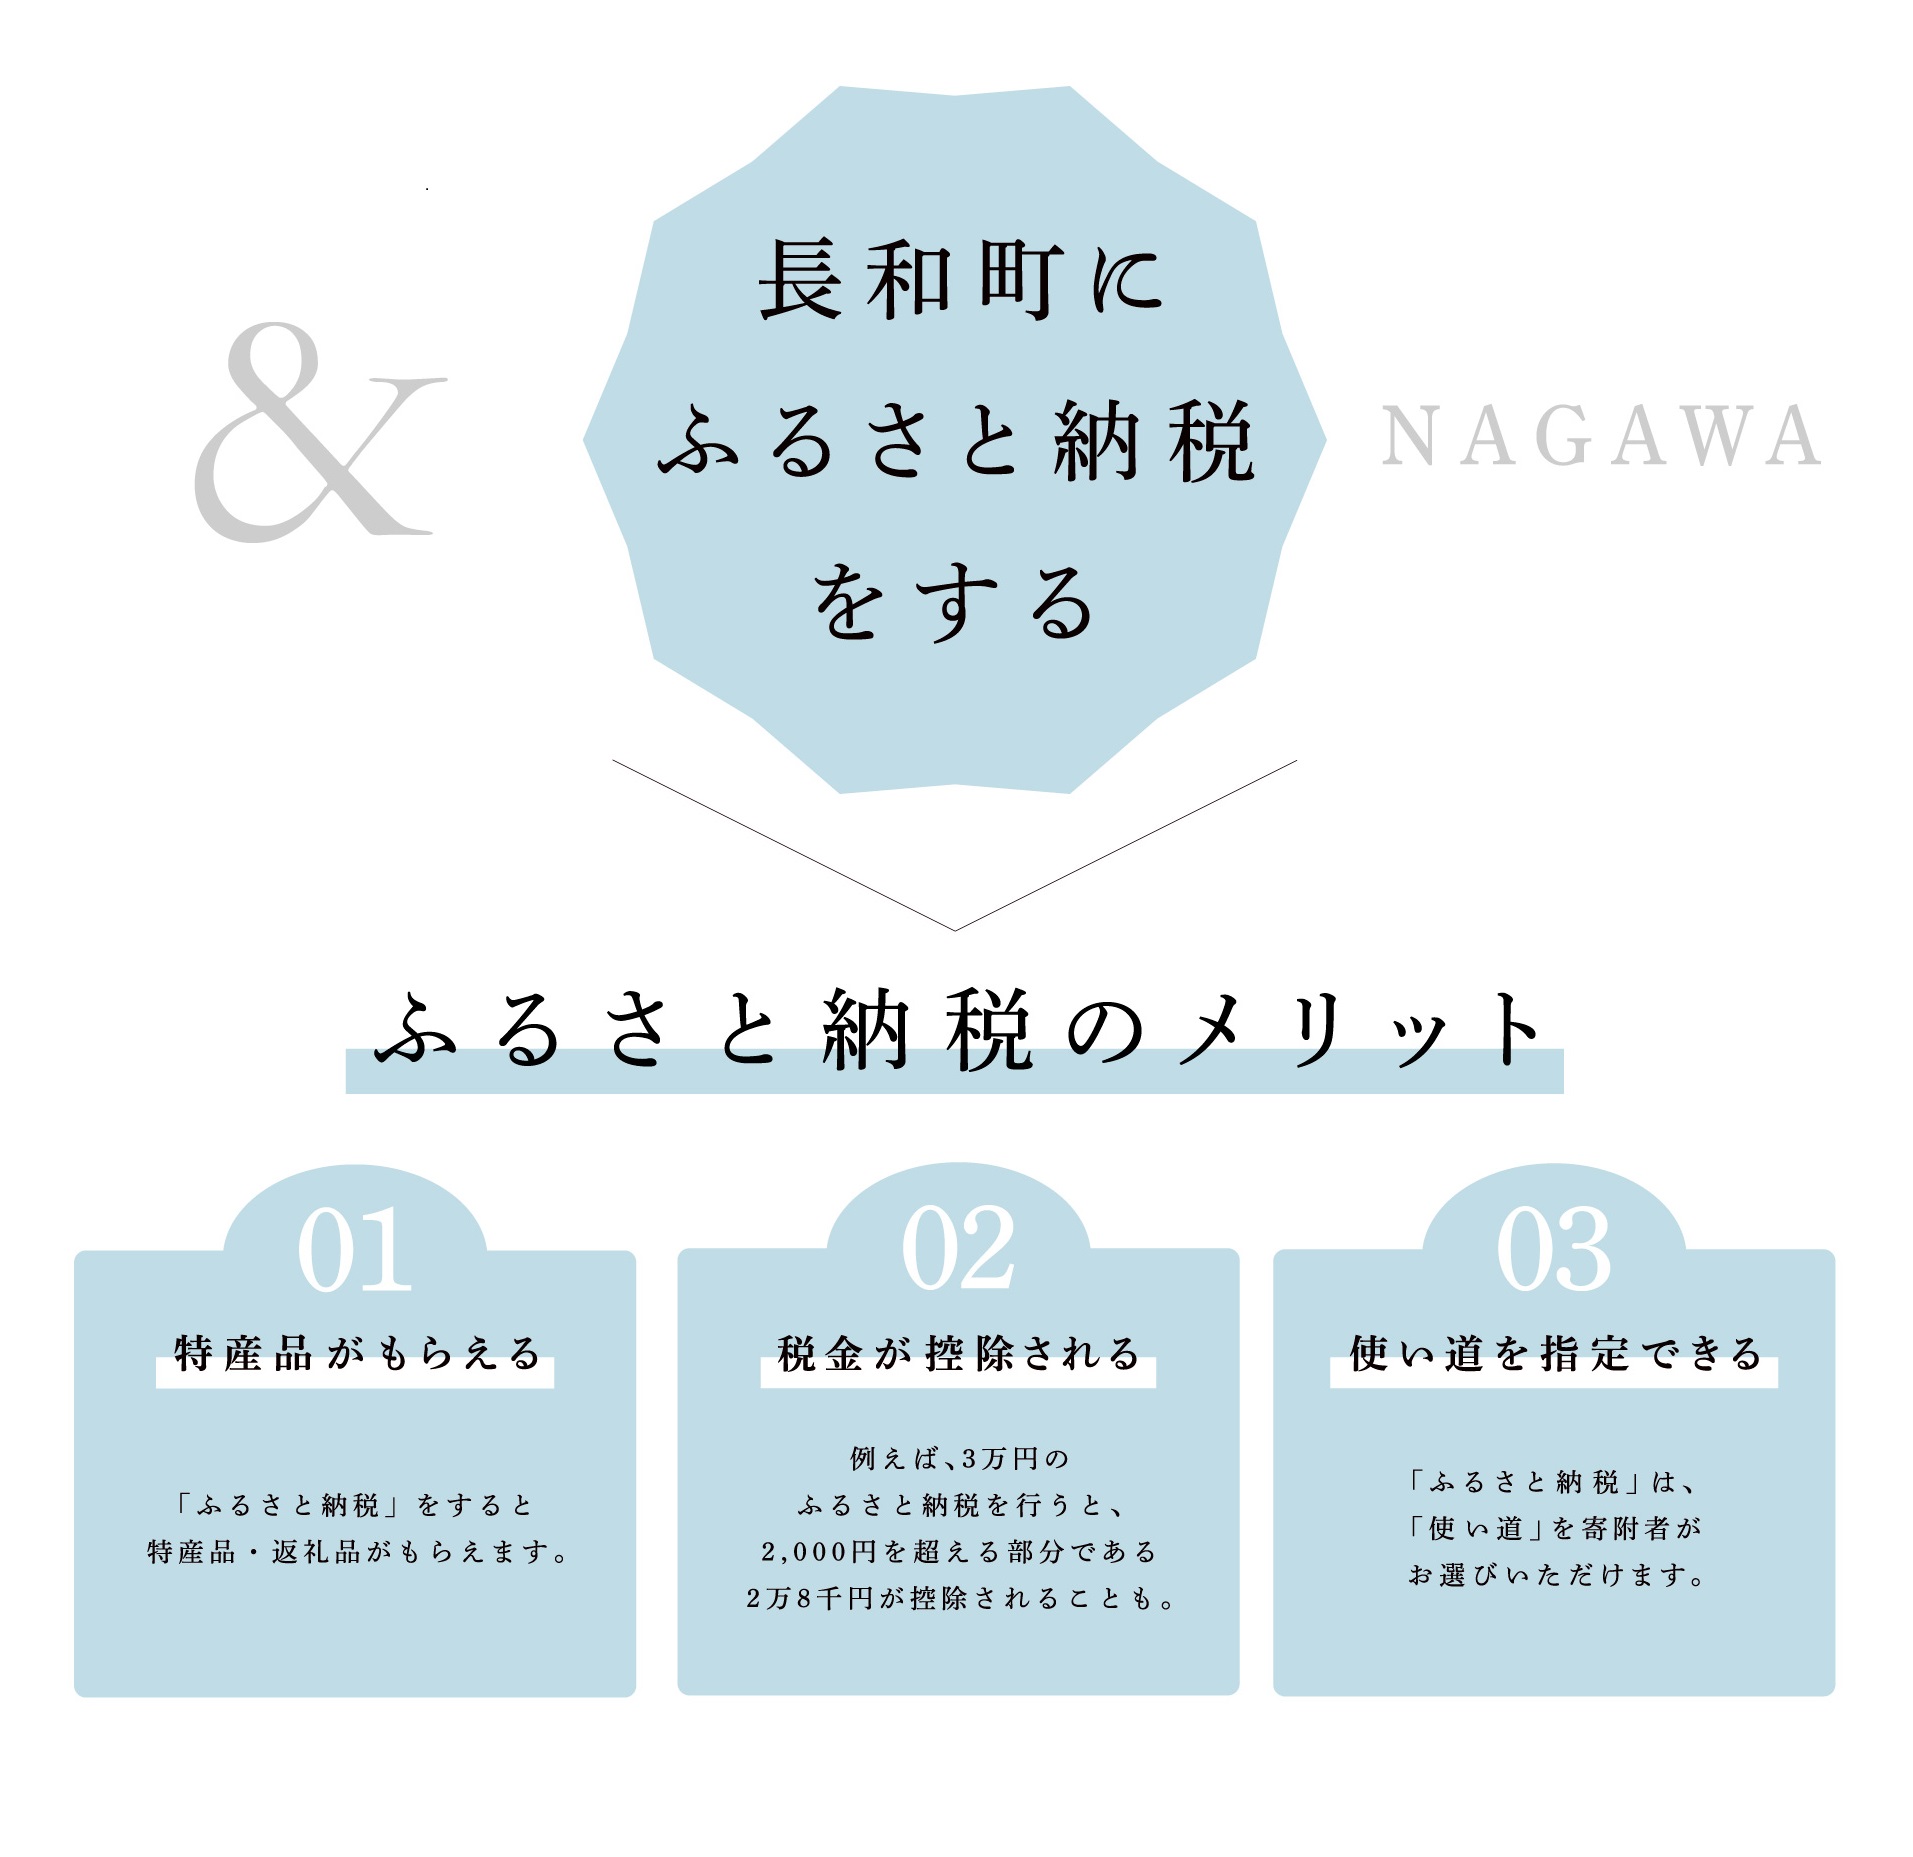 長和町にふるさと納税をするメリット 01特産品がもらえる02税金が控除される03使い道を指定できる